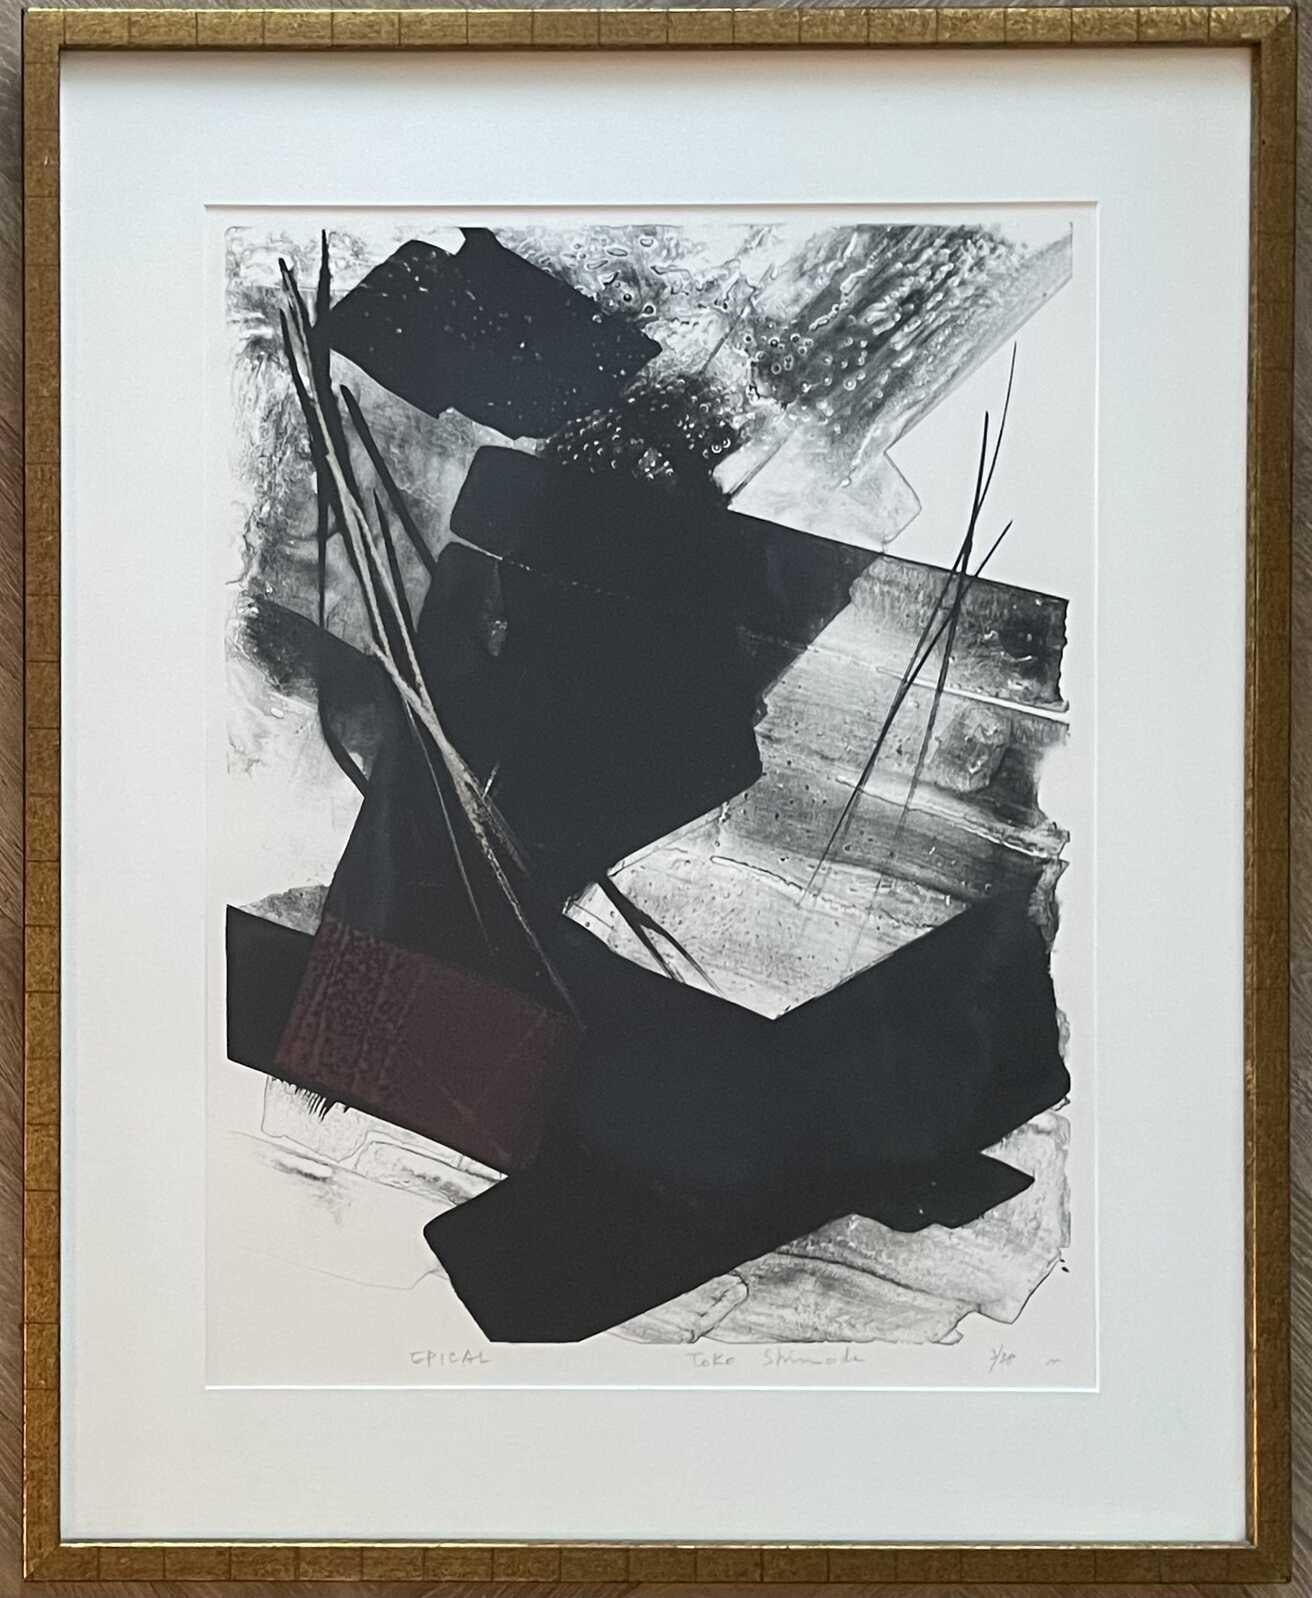 Toko Shinoda Abstract Print - Epical